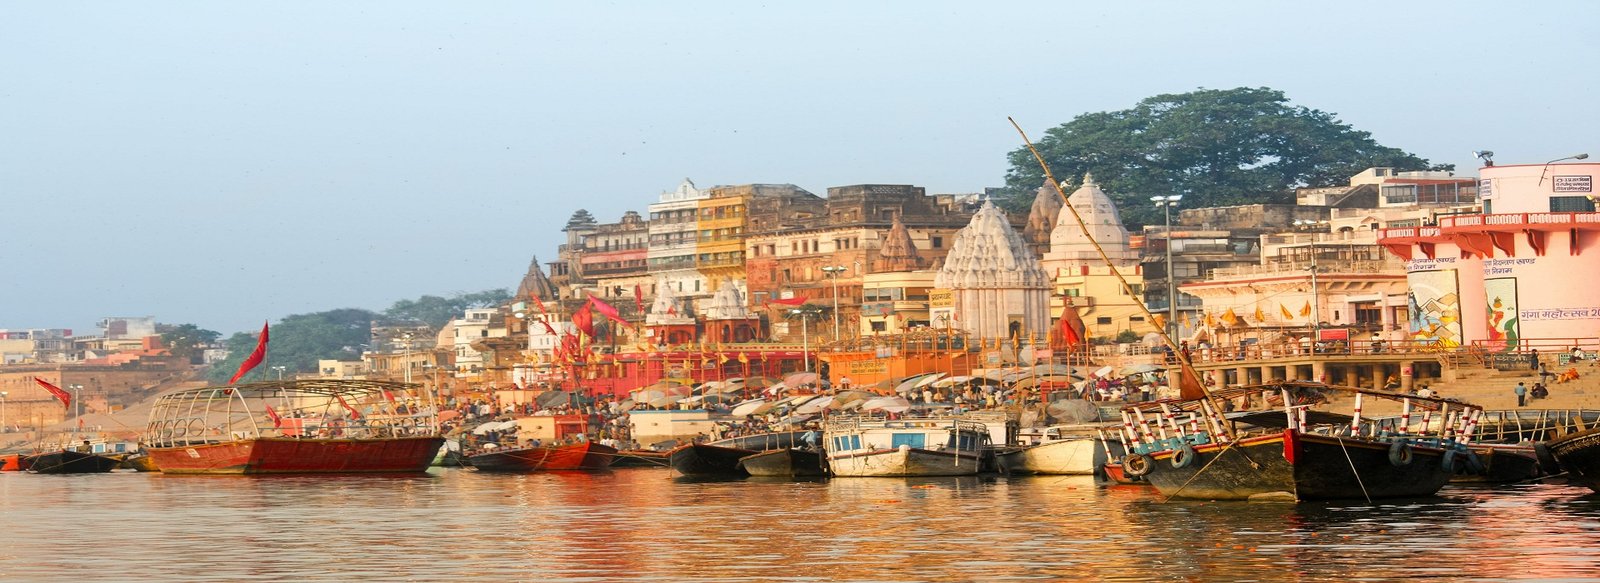 Varanasi Tourism Experience